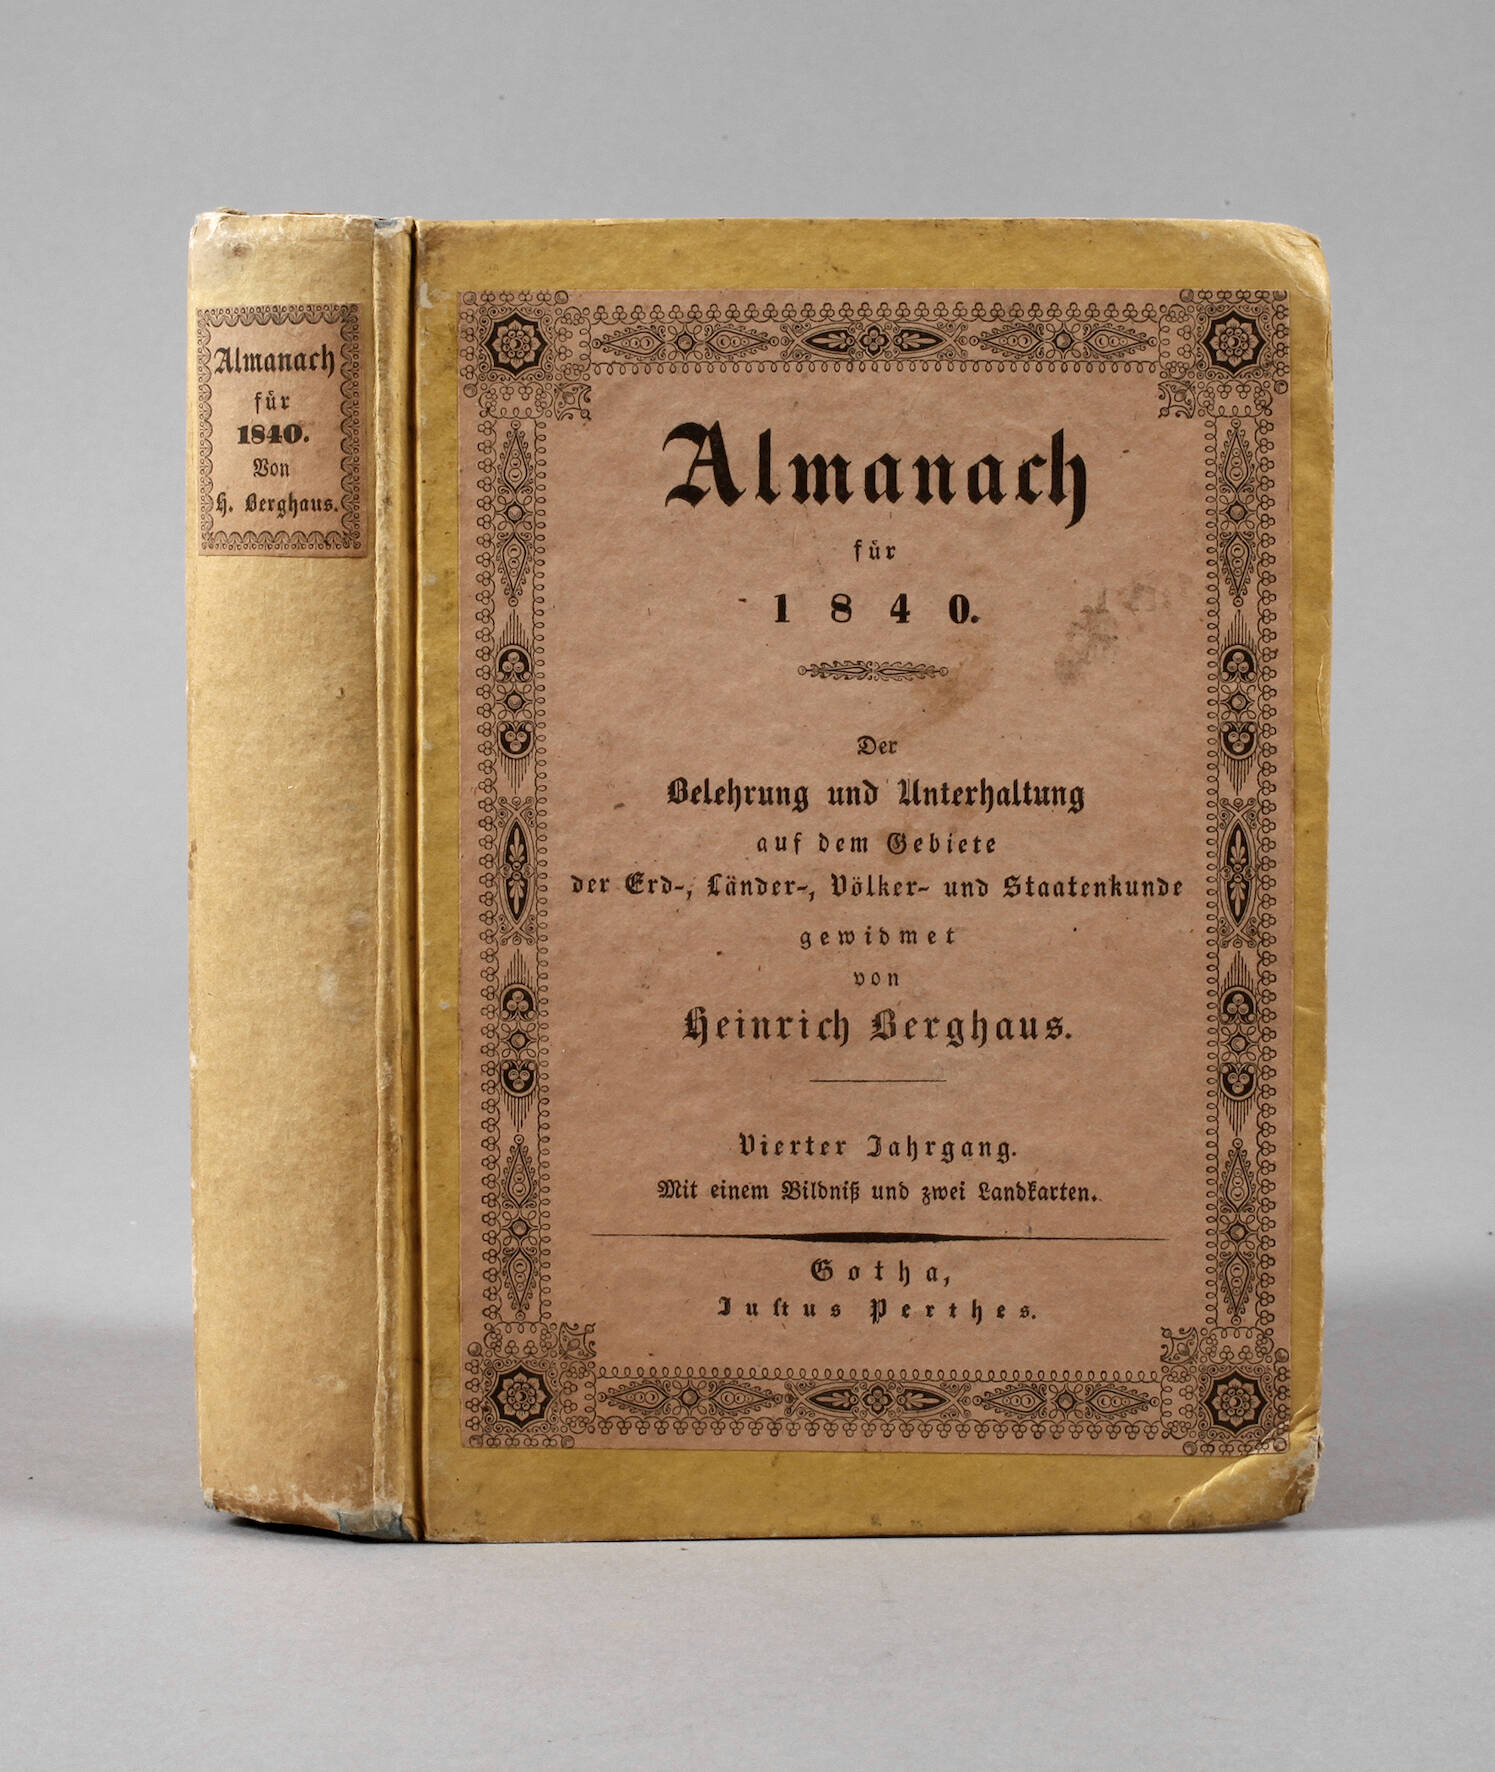 Almanach für 1840